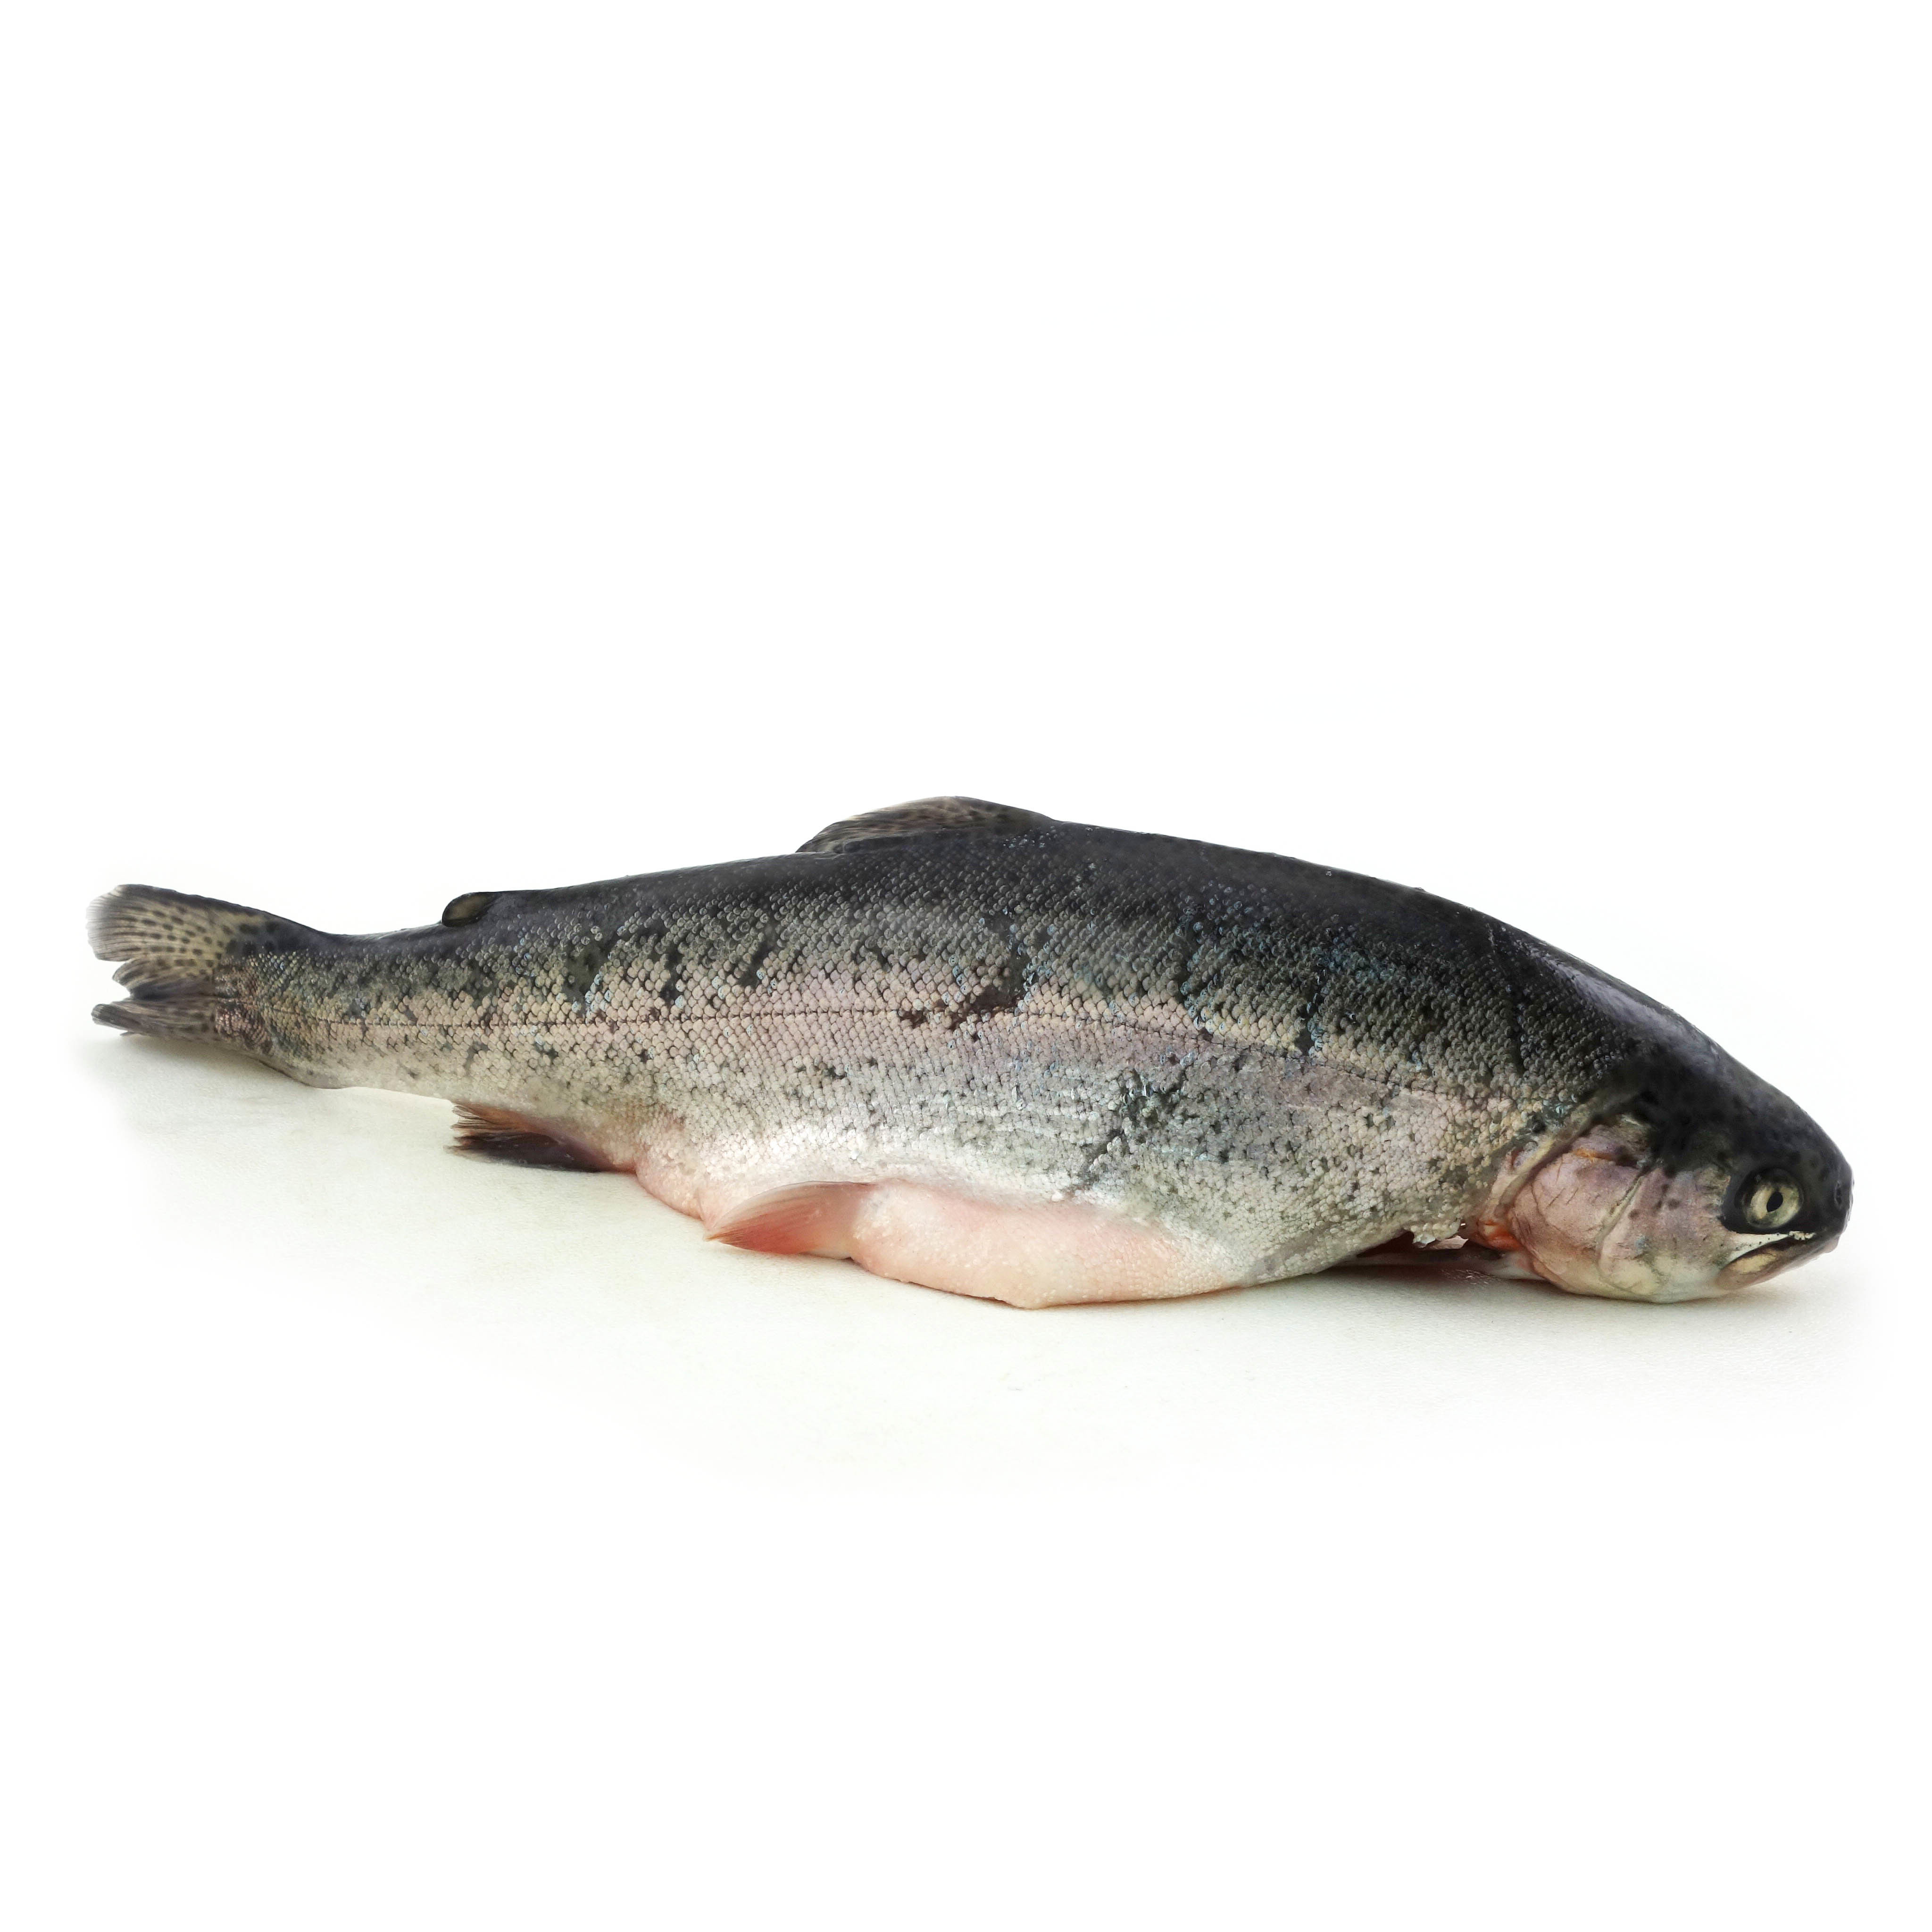 法國野生原條粉紅河鱒魚(Pink River Trout)- 已去鰓及內臟